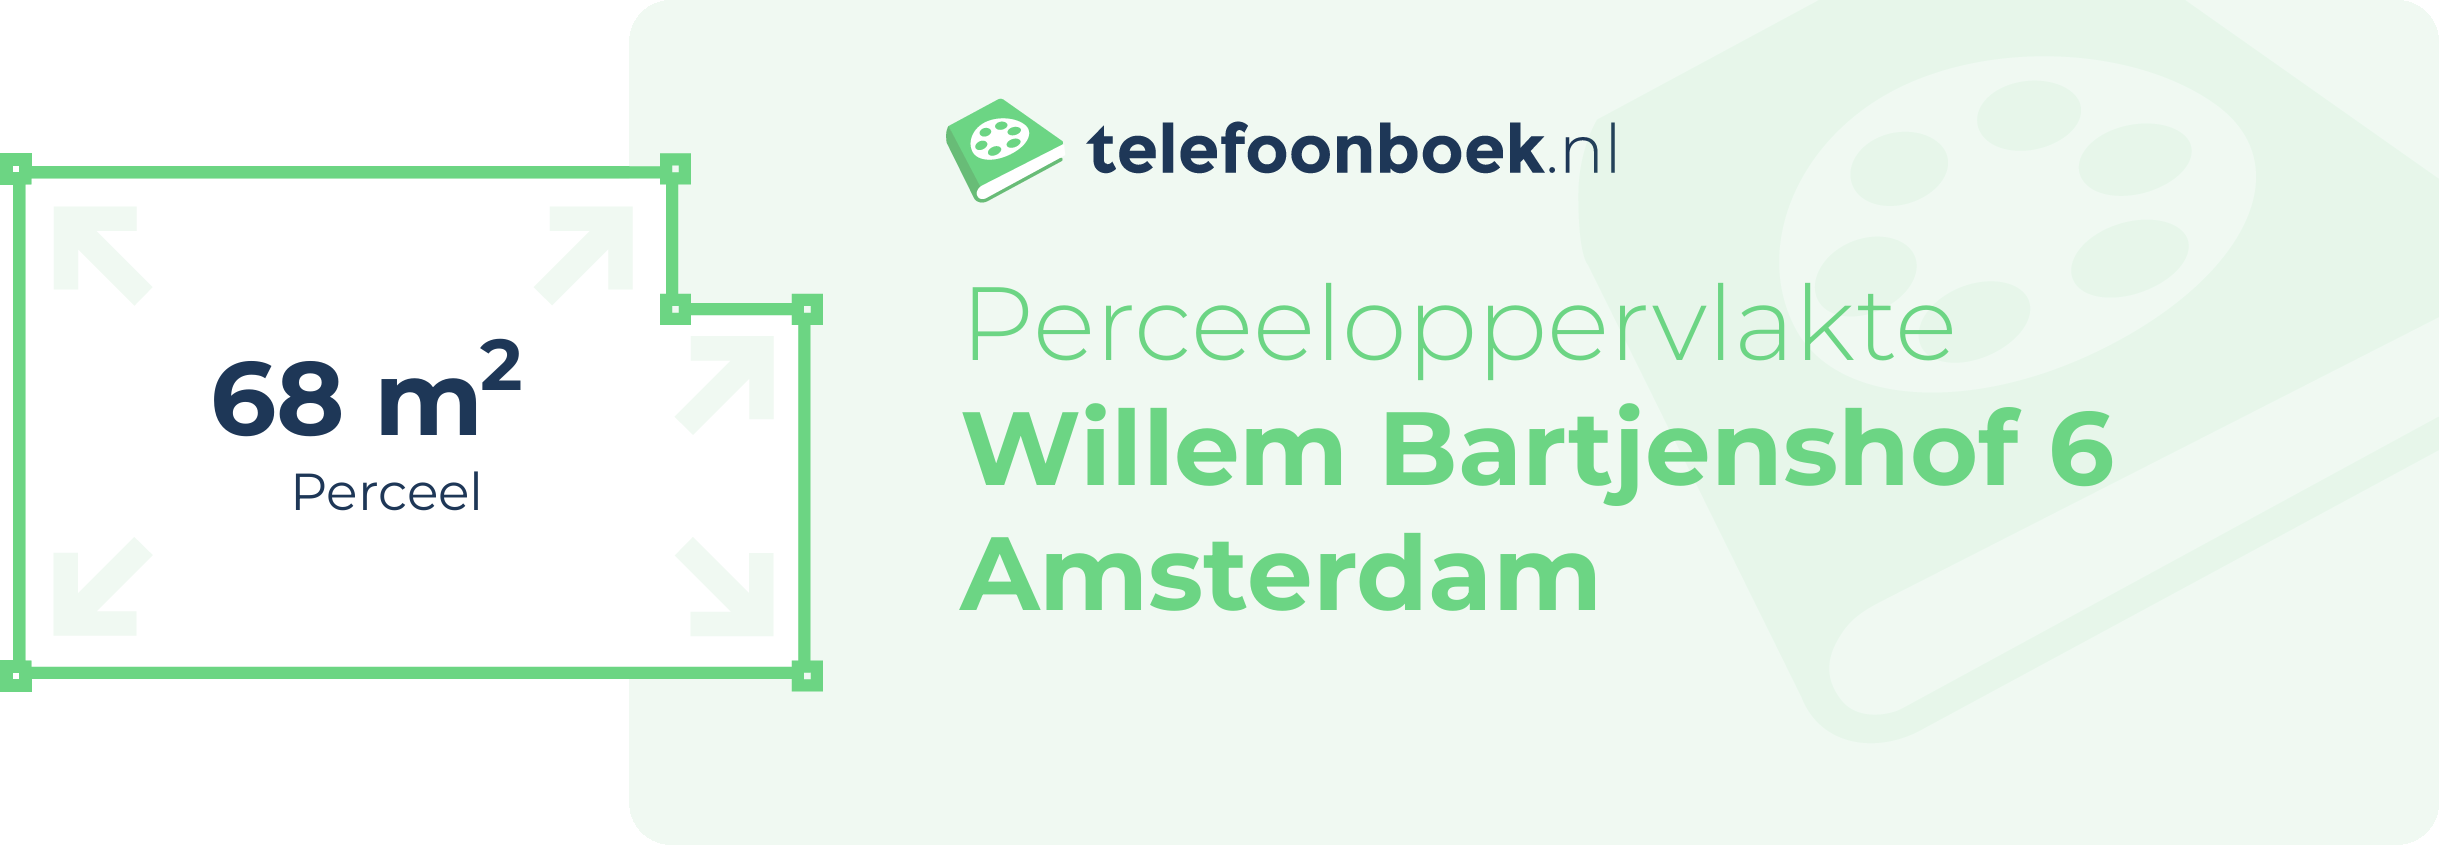 Perceeloppervlakte Willem Bartjenshof 6 Amsterdam